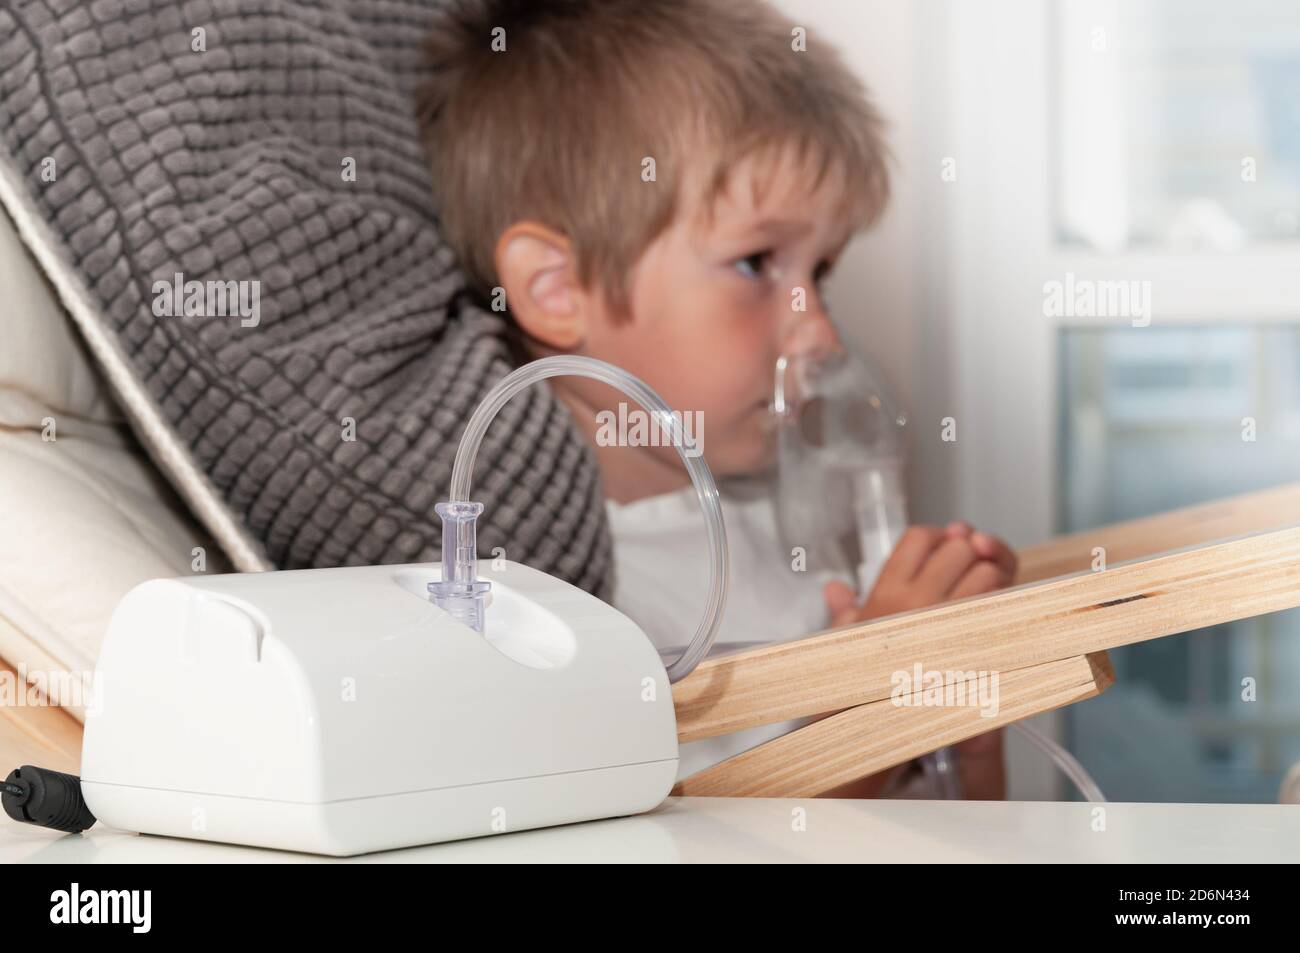 Moderne Jet Zerstäuber oder Zerstäuber für die Inhalation, Atemverfahren durch Lungenentzündung oder Husten für Kinder zu Hause. Stockfoto